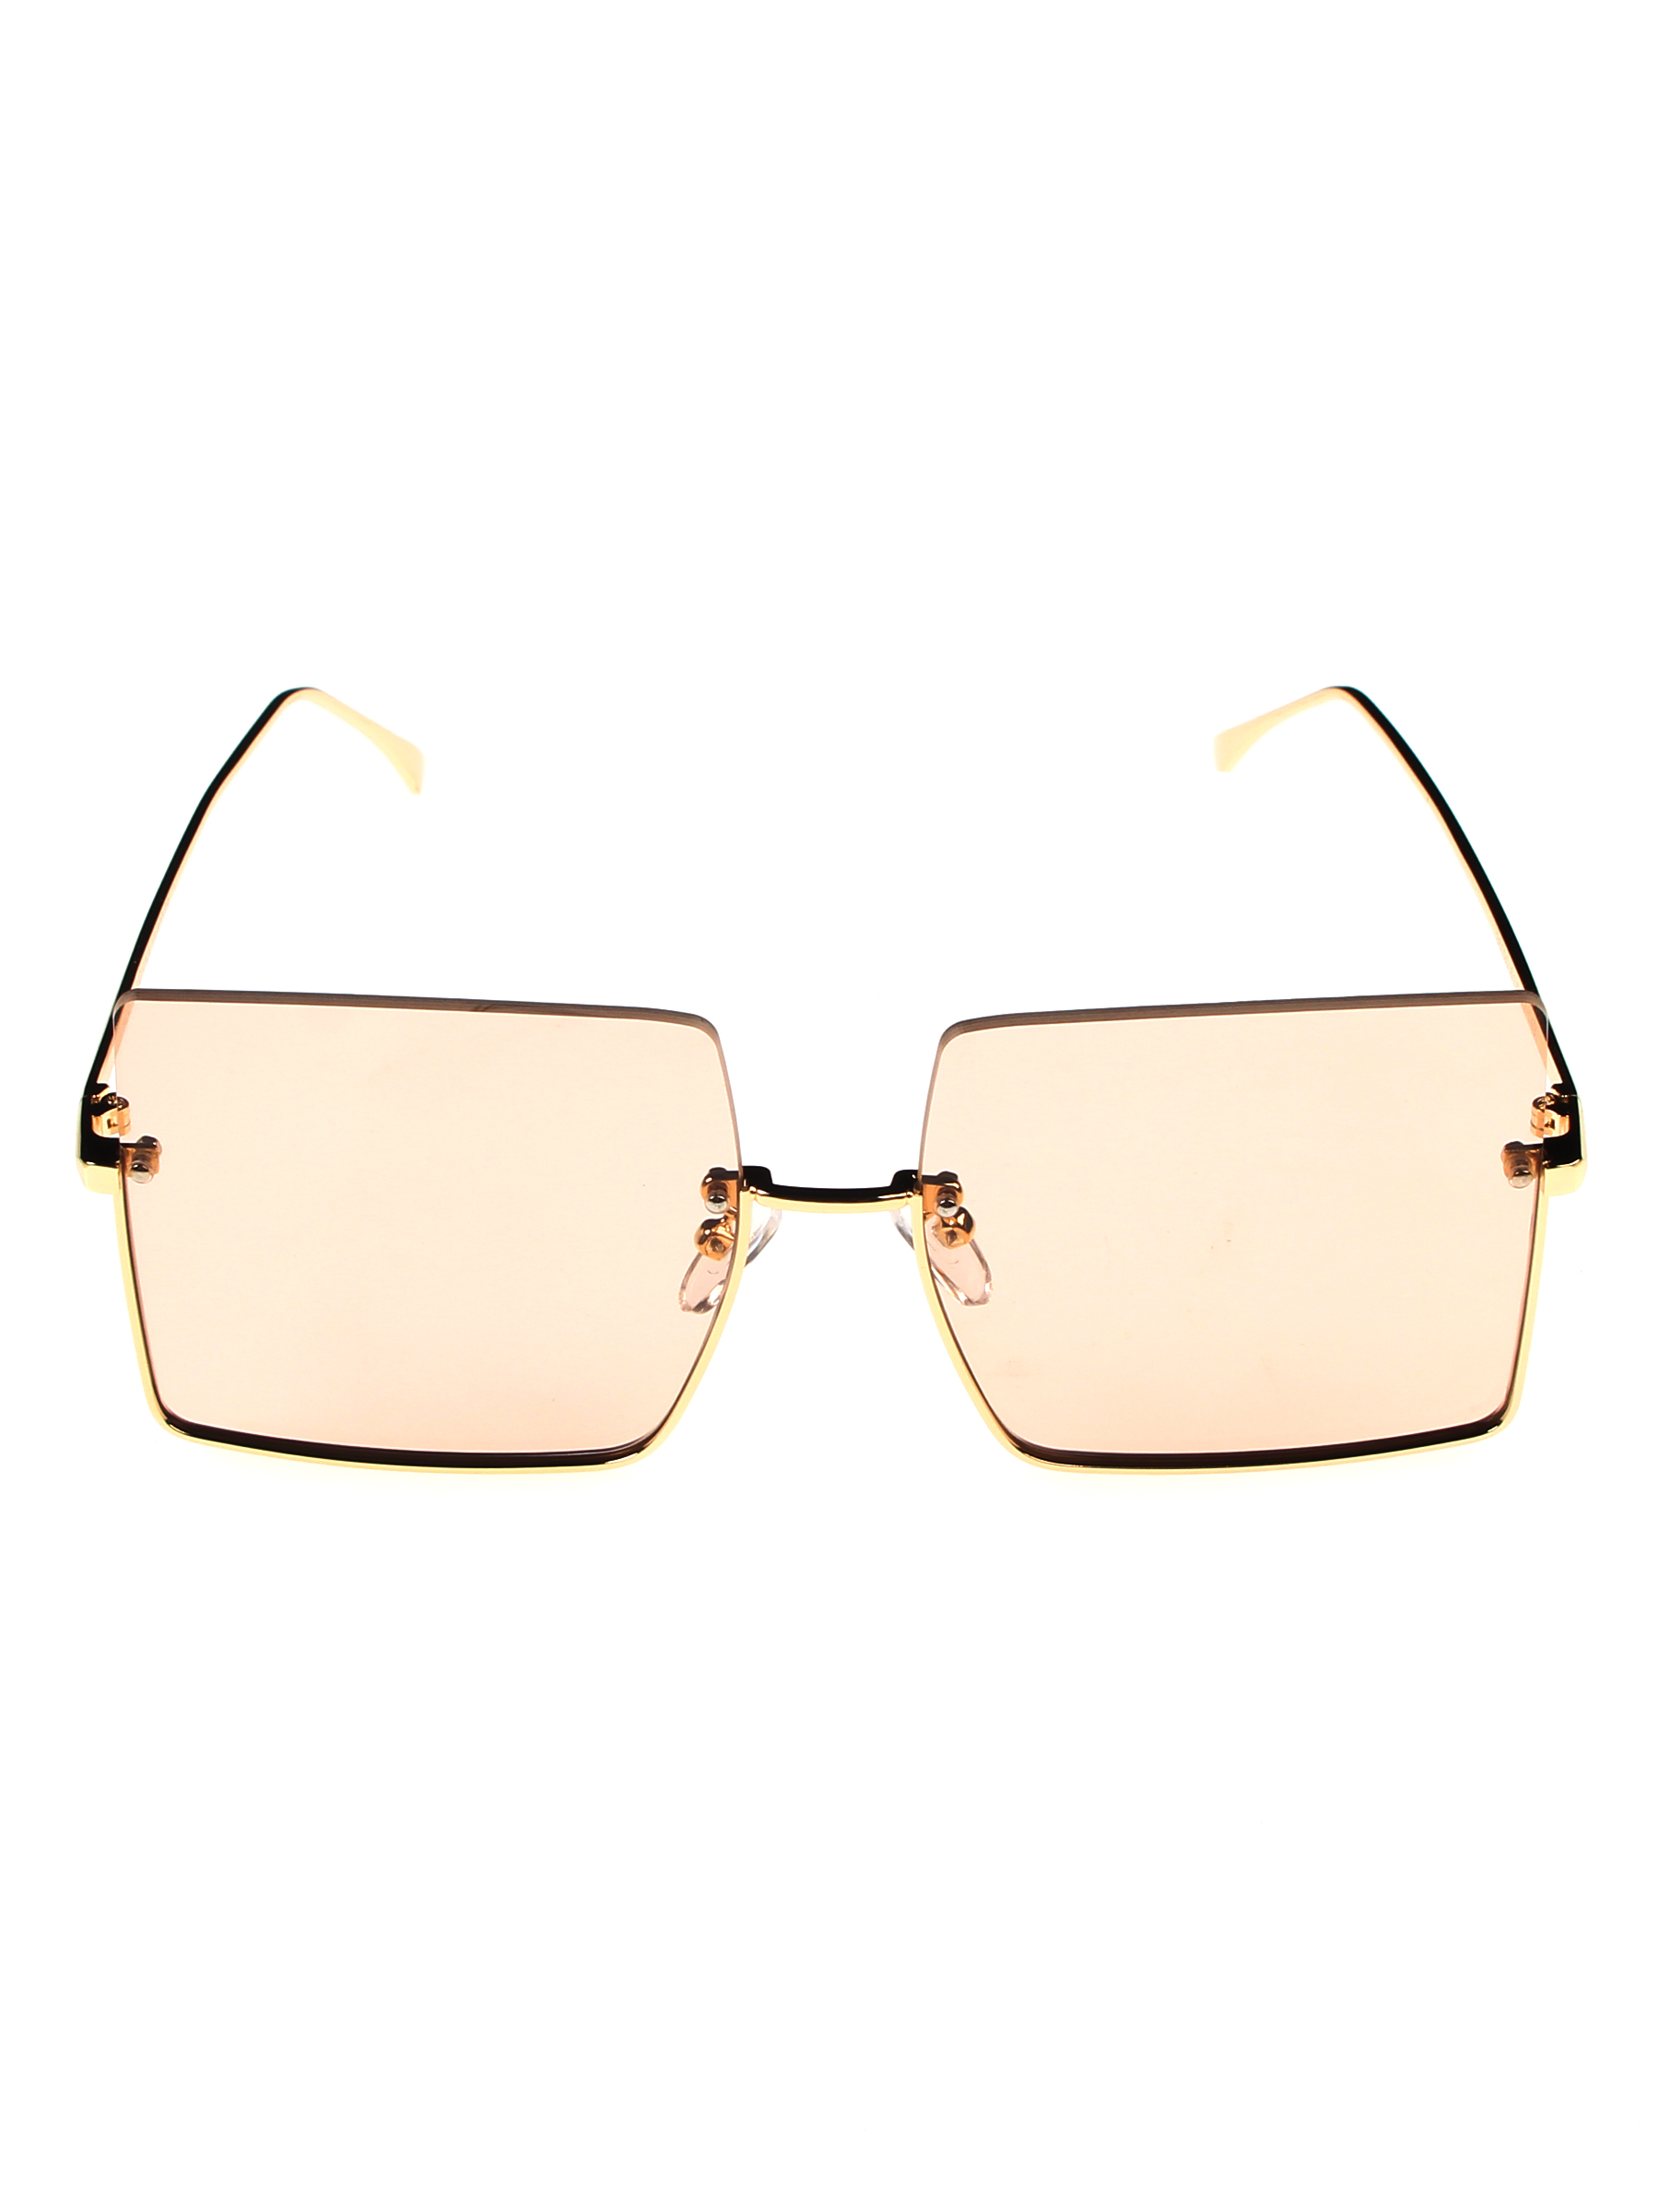 Солнцезащитные очки женские Pretty Mania NDP001 бежевые